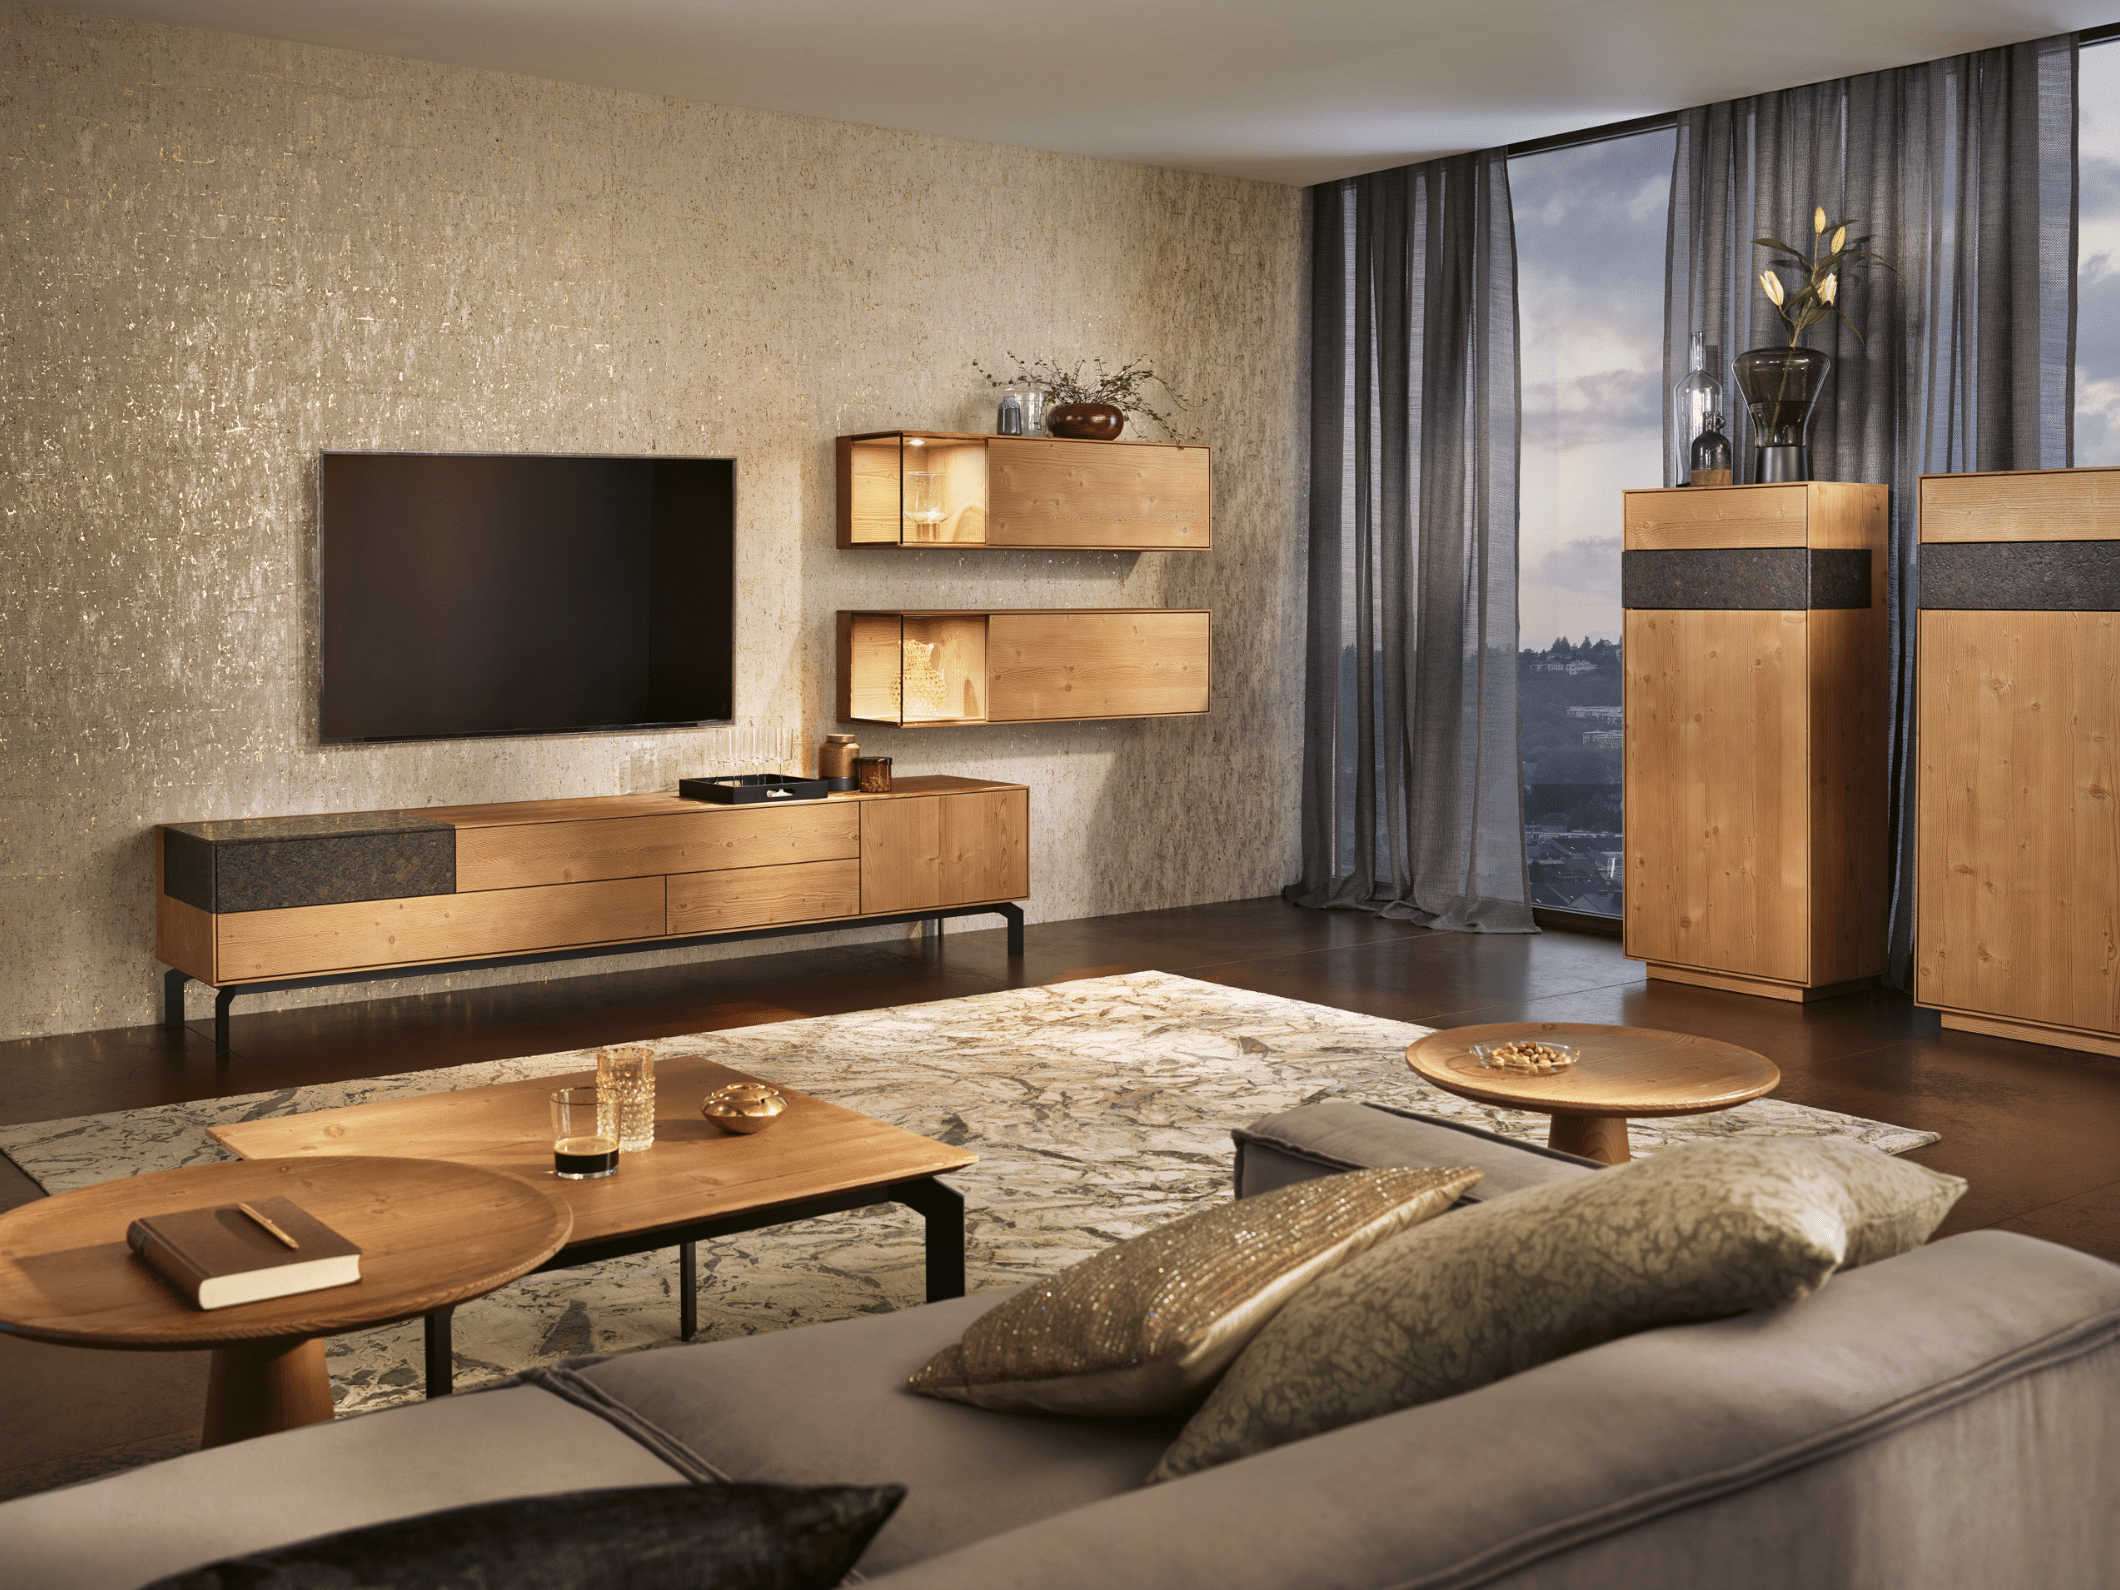 Tischlerei Bauer zeigt eine Wohnzimmer mit Möbel aus dem Holz der Bergeiche (gebürstet) von ANREI, wie Sideboard und TV-Rack, Wandboards, einem Couchtisch sowie einer gemütlichen Wohnlandschaft.